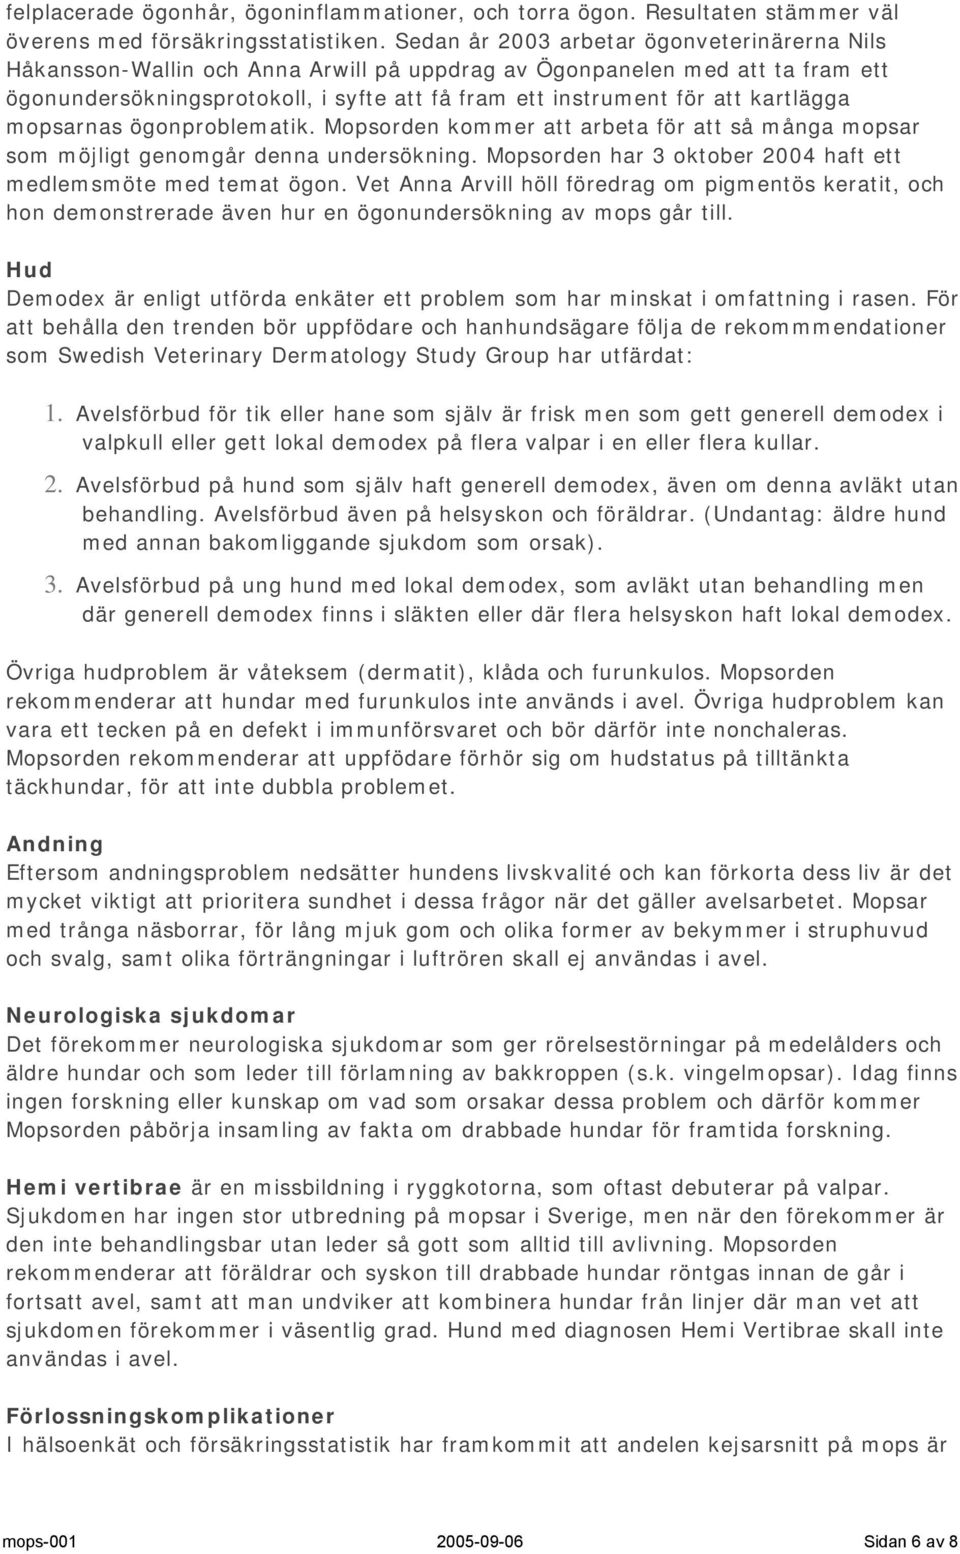 Avelspolicy för Mopsorden - rasklubben för mops - PDF Free Download